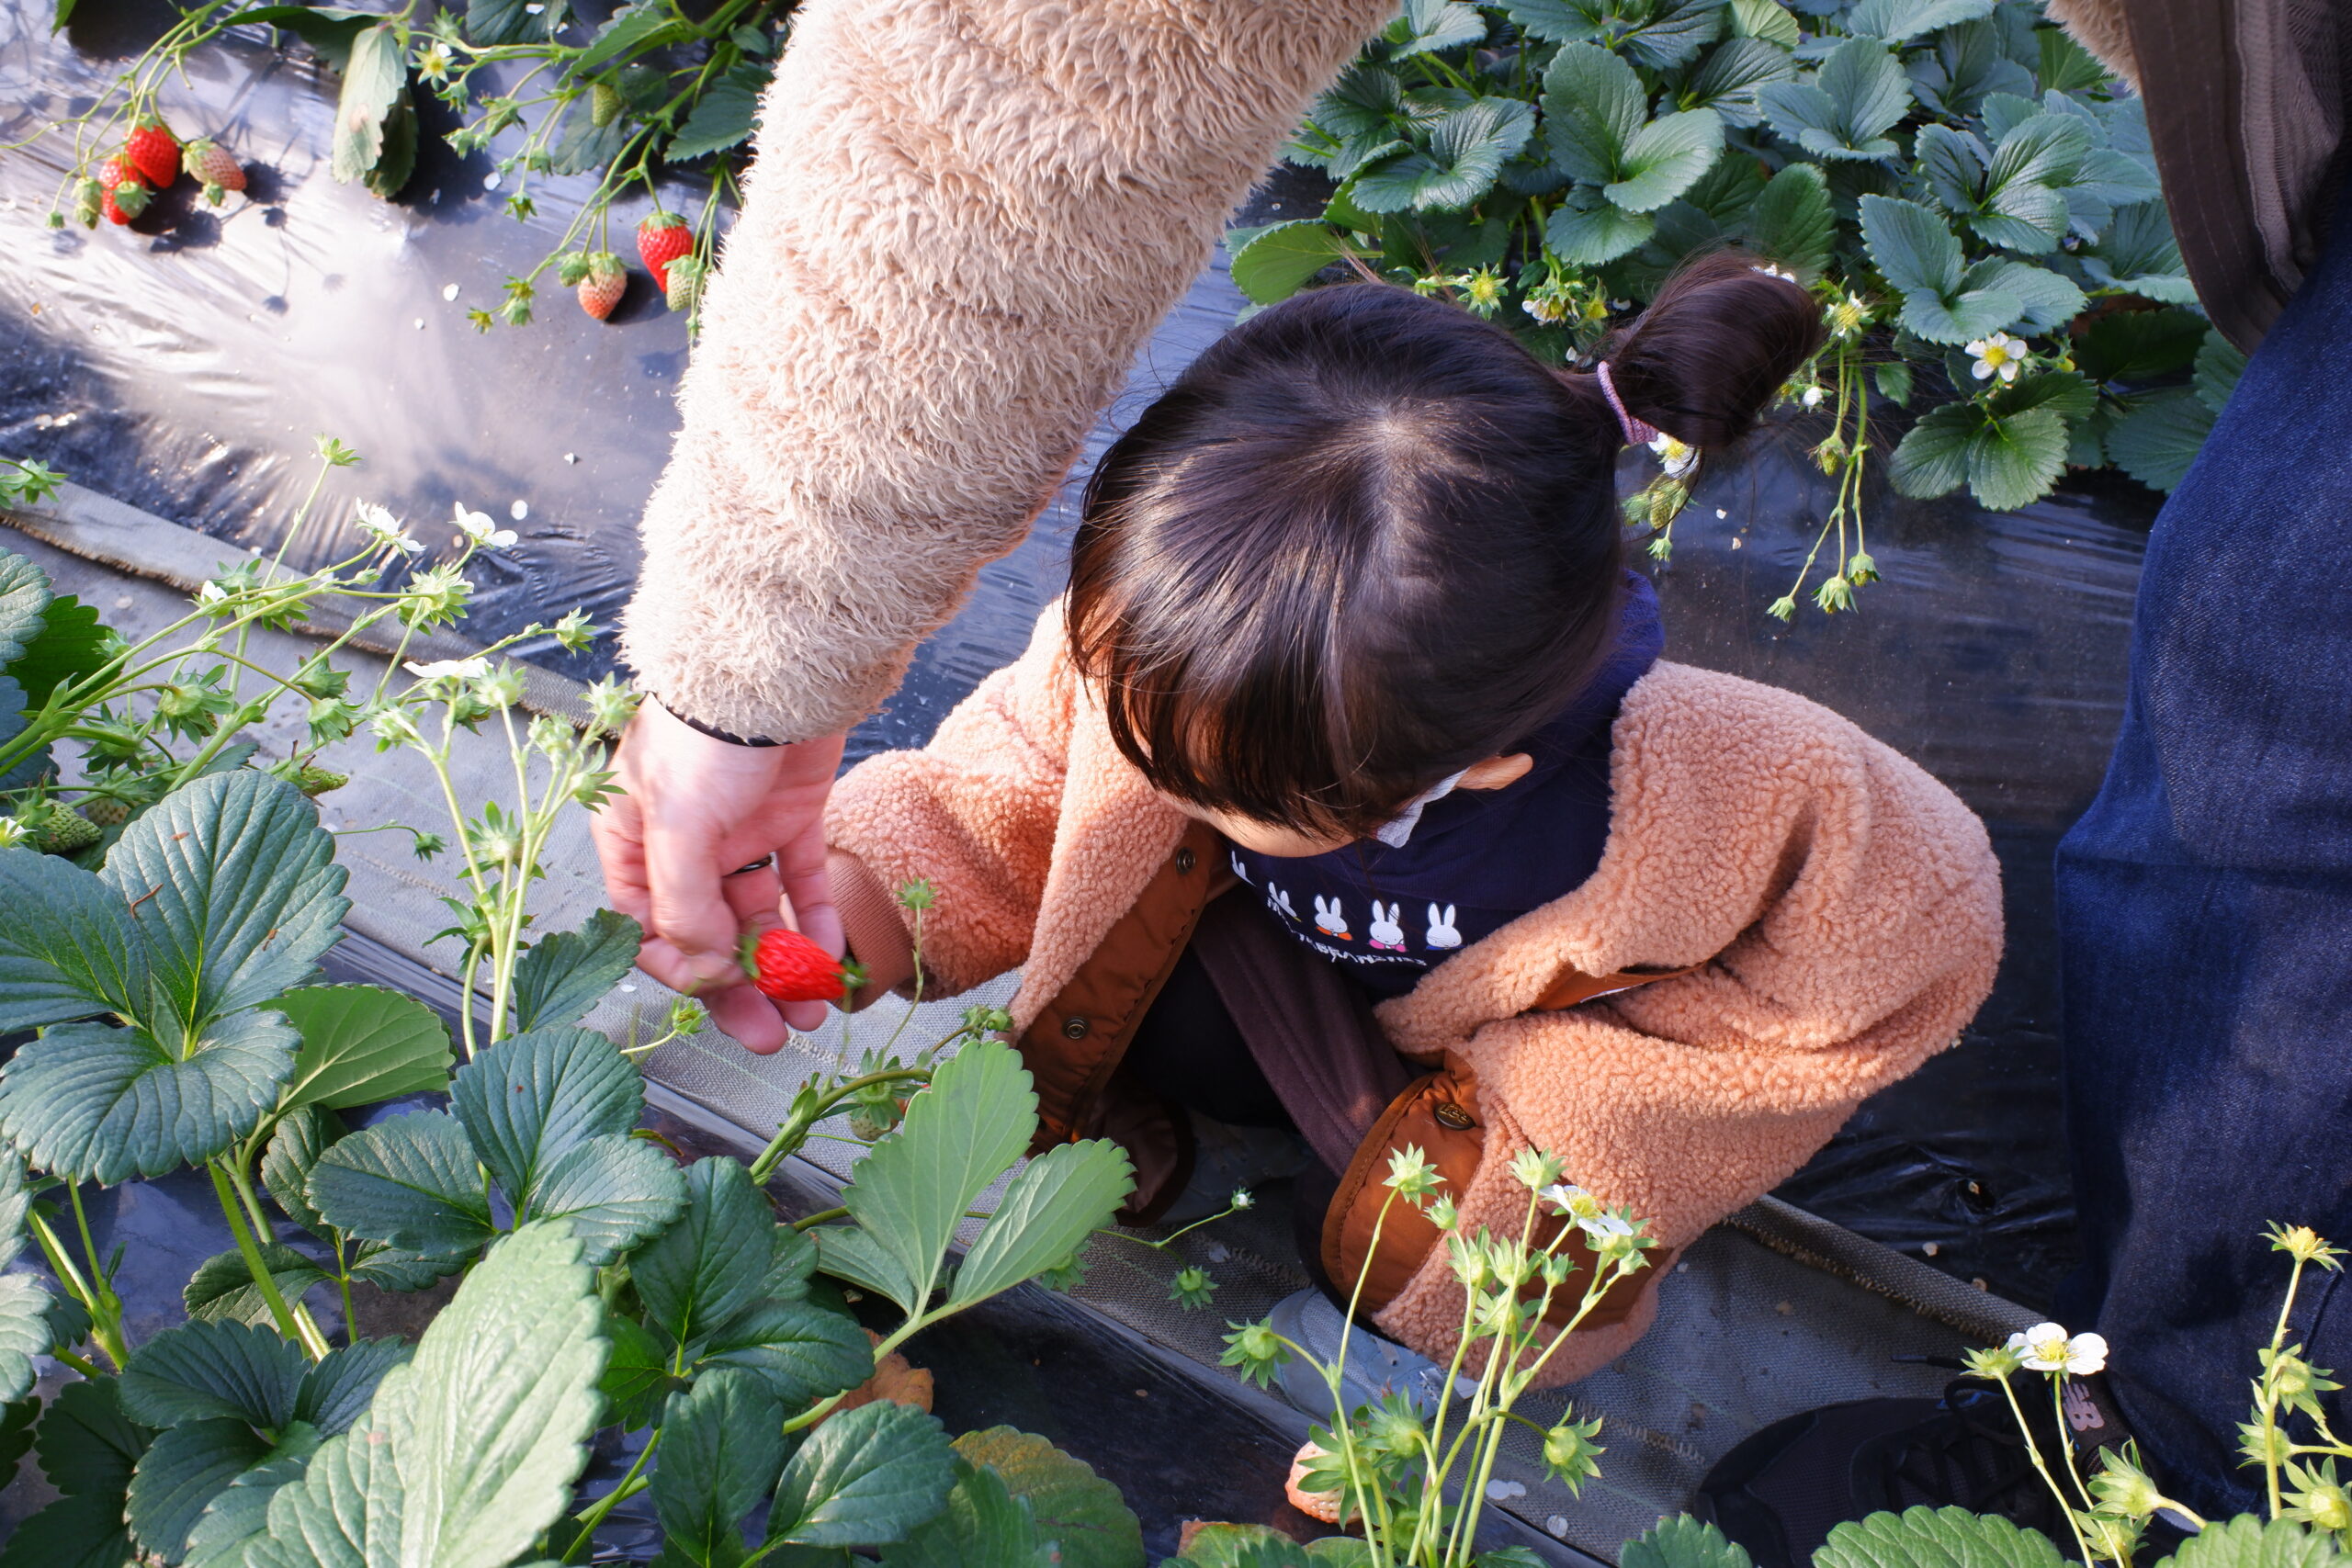 Our daughter enjoying strawberry picking at Sato no MUJI Minnami no Sato